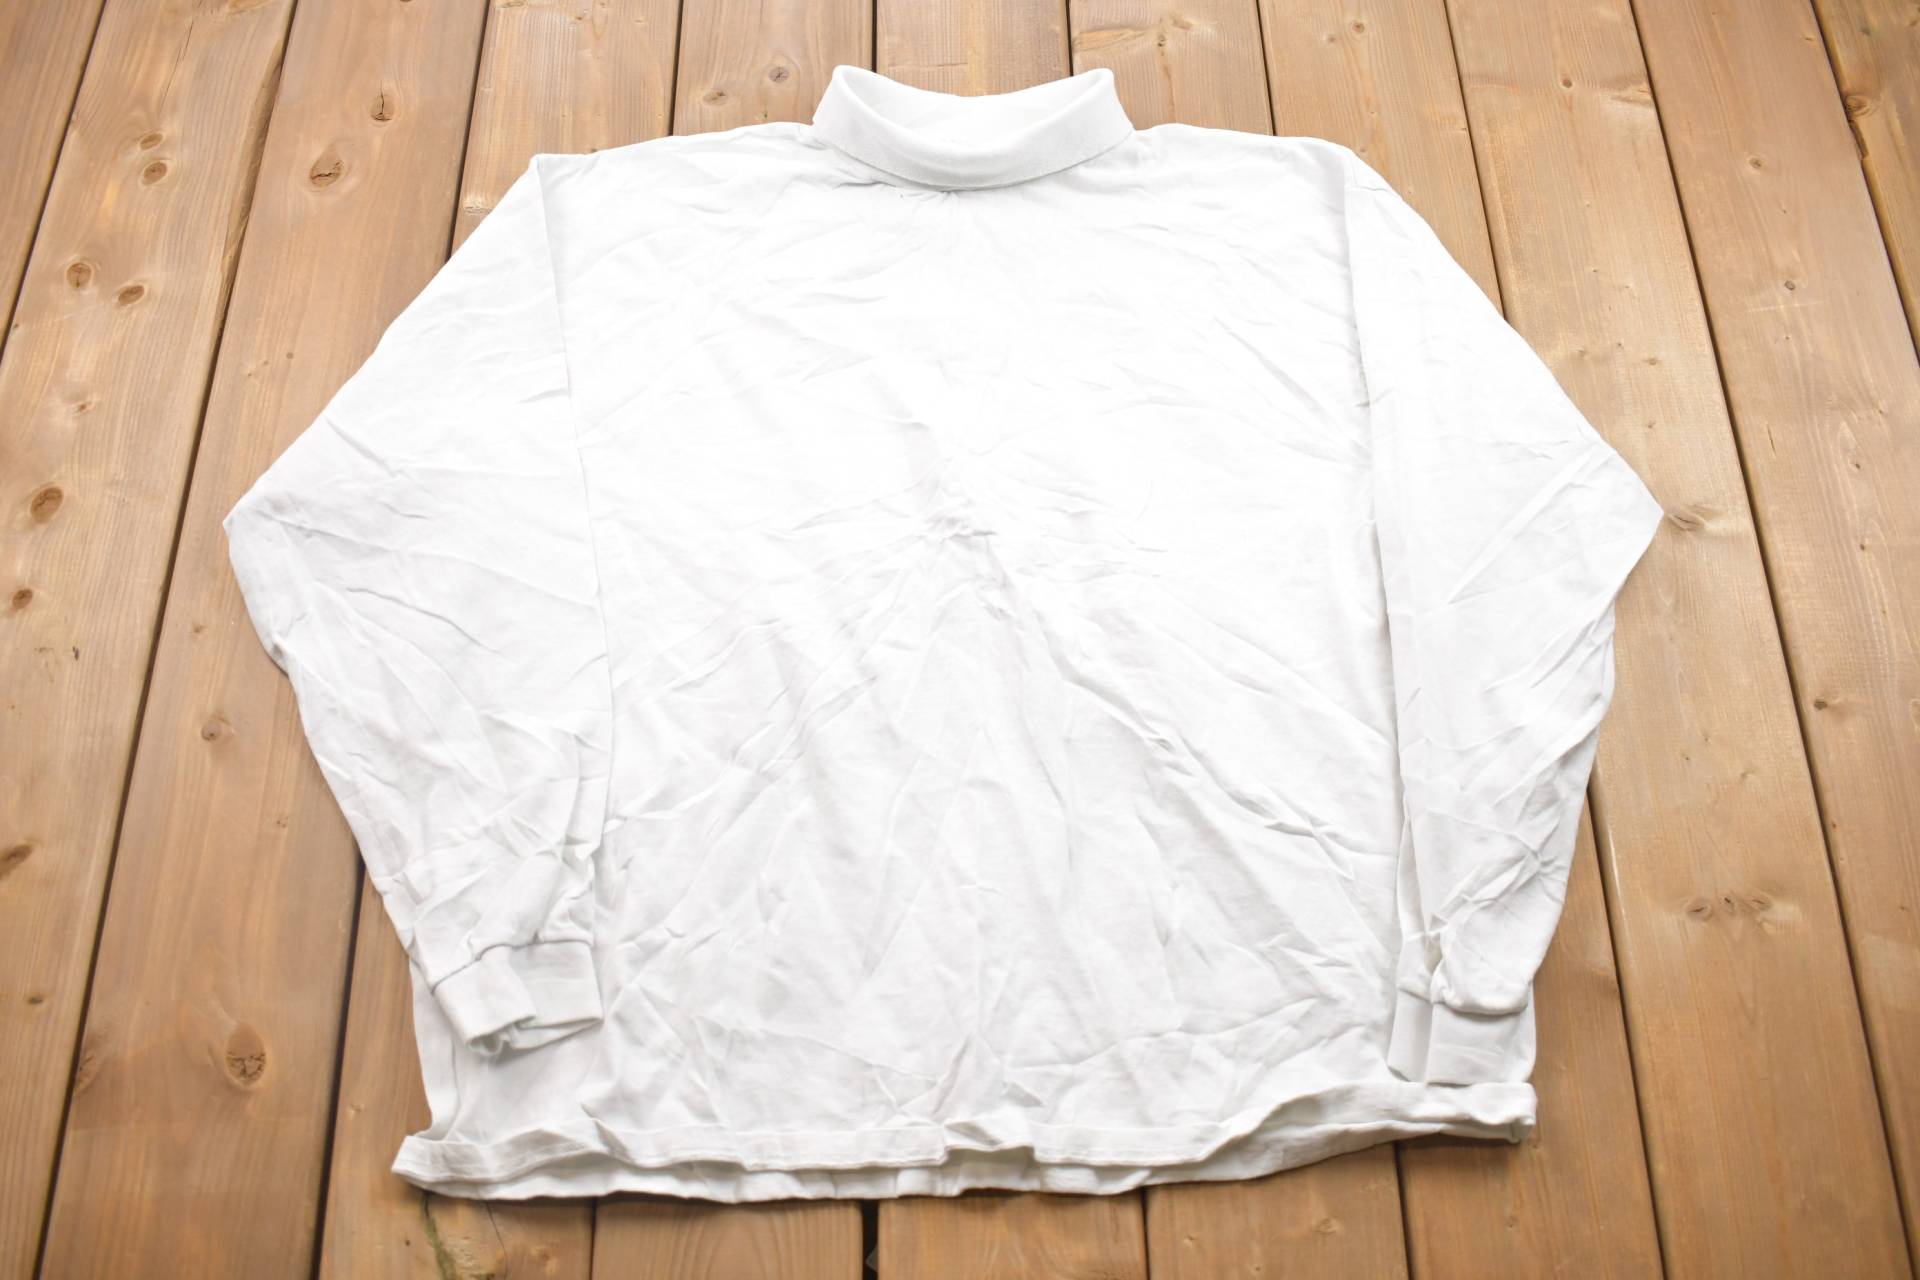 Vintage 1990S Lee Blank Rollkragen Sweatshirt Mit Rundhalsausschnitt/90S Crewneck Made in Usa Essential Streetwear von Lostboysvintage